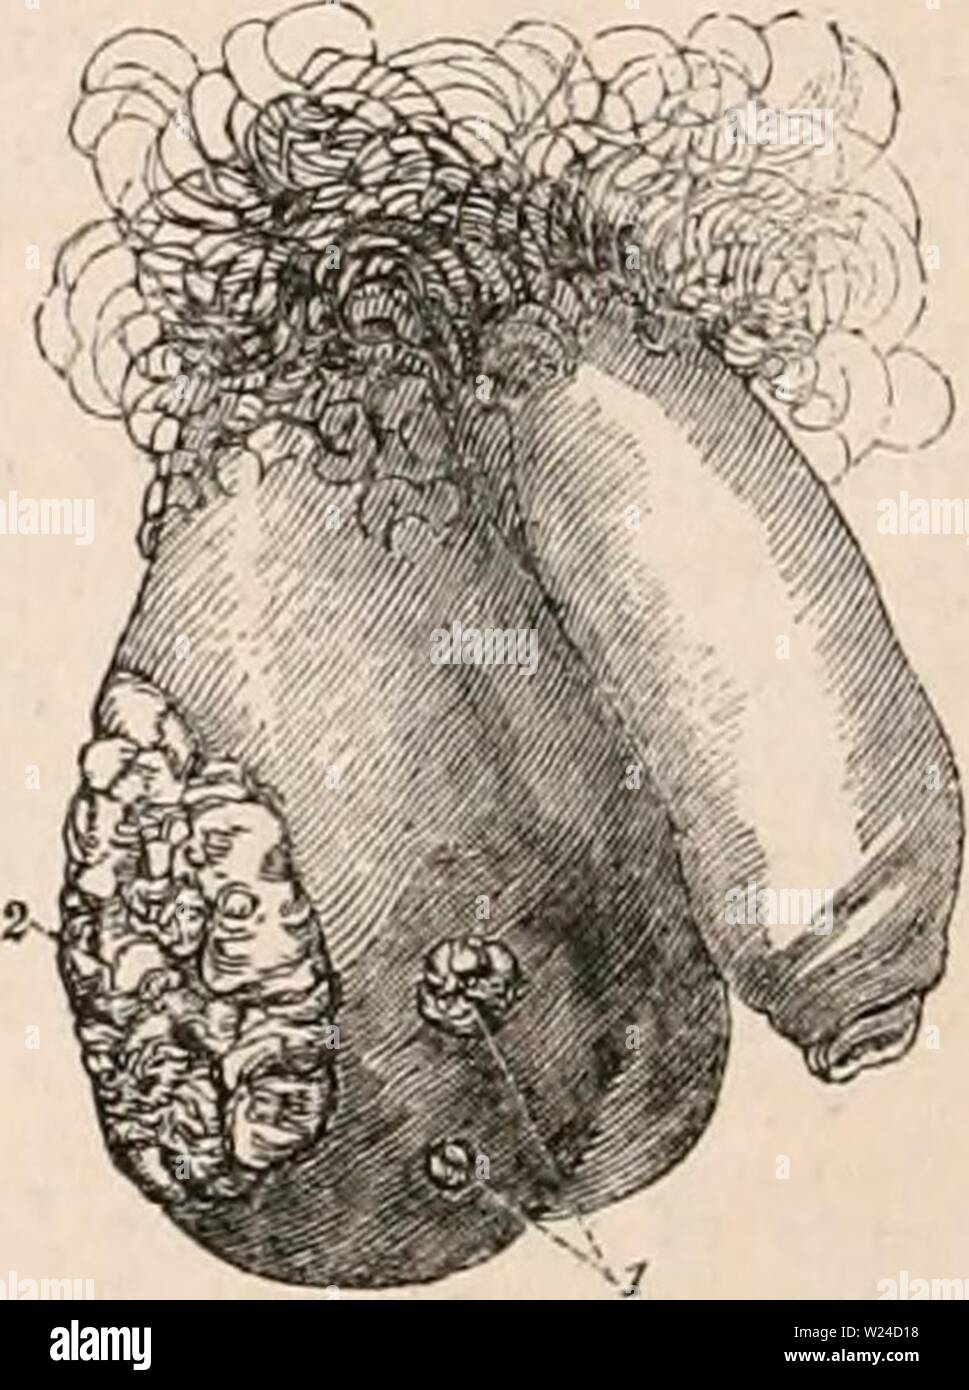 Archiv Bild von Seite 229 des cyclopaedia von Anatomie und. Die cyclopaedia von Anatomie und Physiologie cyclopdiaofana 0402 Todd Jahr: 1849 eines schwarzen Mannes, mit Elefantiasis, von Dr. Titley Arbeiten zum Thema "Krankheiten der Geschlechtsorgane berührt, die in der männlichen, "der Tumor de-scended fast zu den Knöcheln. Elefantiasis der Hodensack ist eine krankhafte Zuneigung der dermalen Hüllen, analog zu der Erweiterung der Extremitäten, die allgemein von den Namen der Barbadues Bein bekannt; mit der, in der Tat, in den Ländern, in denen die Krankheit überwiegend ist, haftet es an Com werden kombiniert. Elefantiasis der Hodensack, Stockfoto